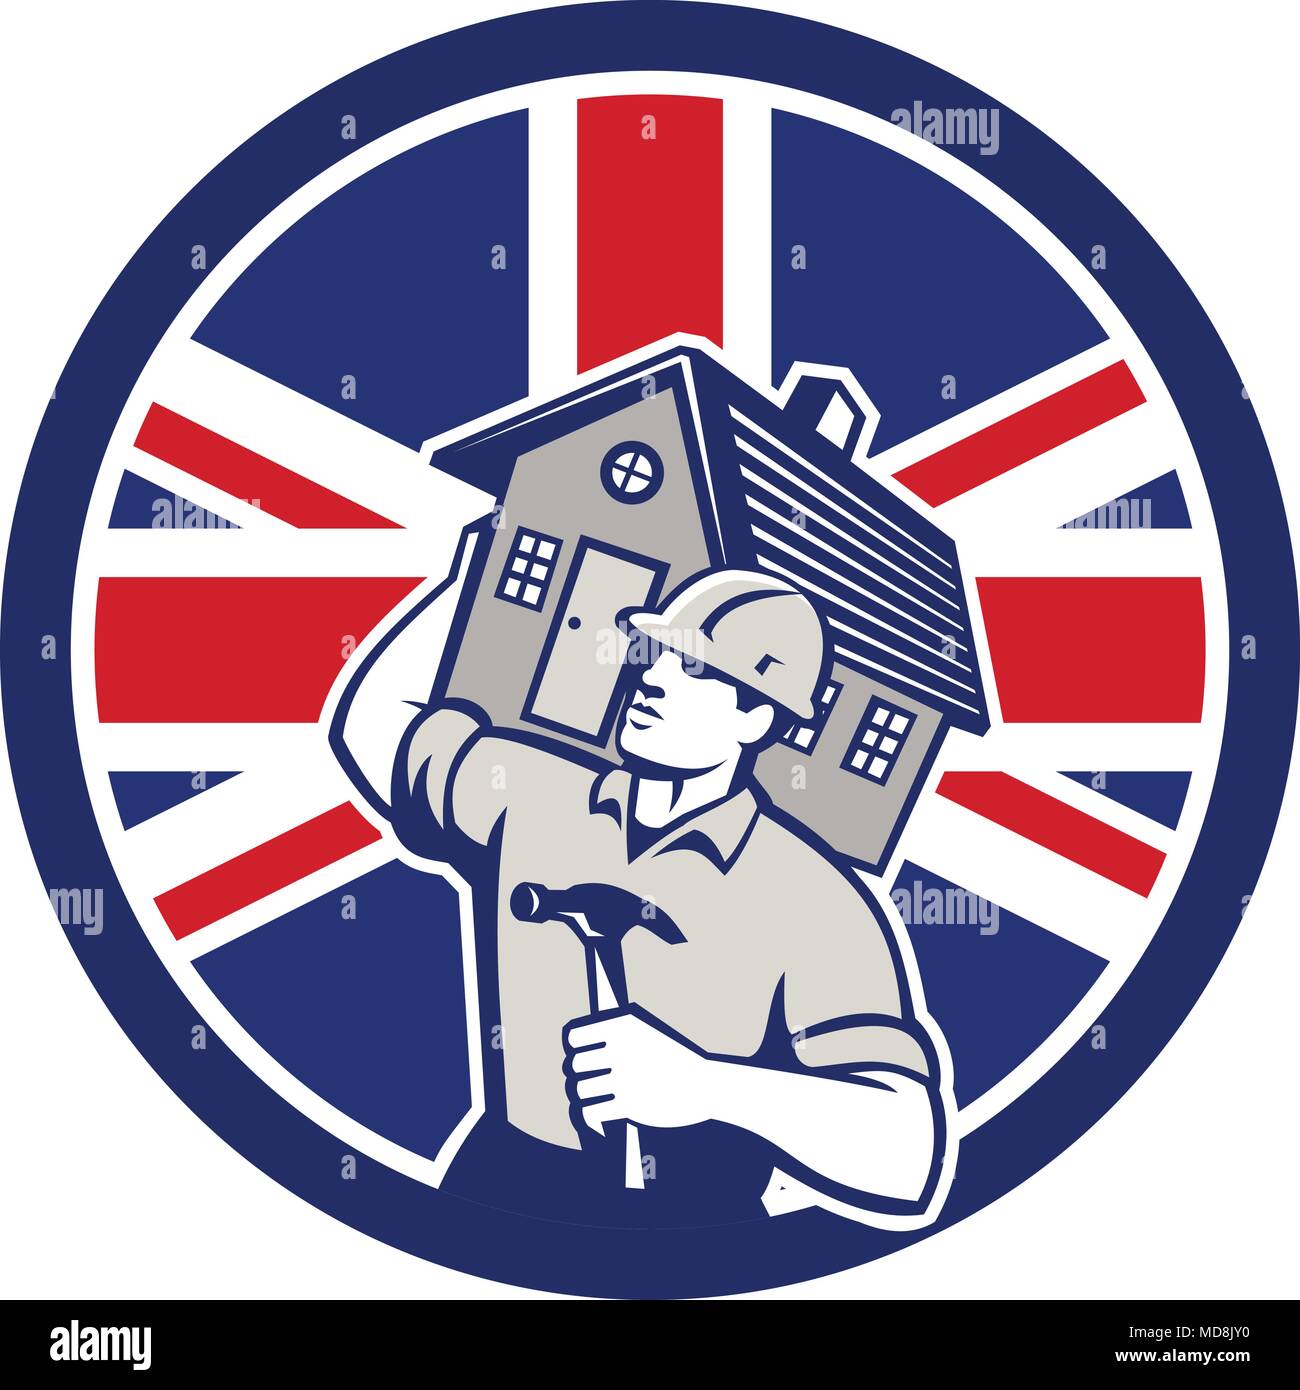 Style rétro icône illustration d'un entrepreneur en construction, constructeur, bricoleur, carpenter réalisation maison avec Royaume-uni UK, Grande-Bretagne Illustration de Vecteur